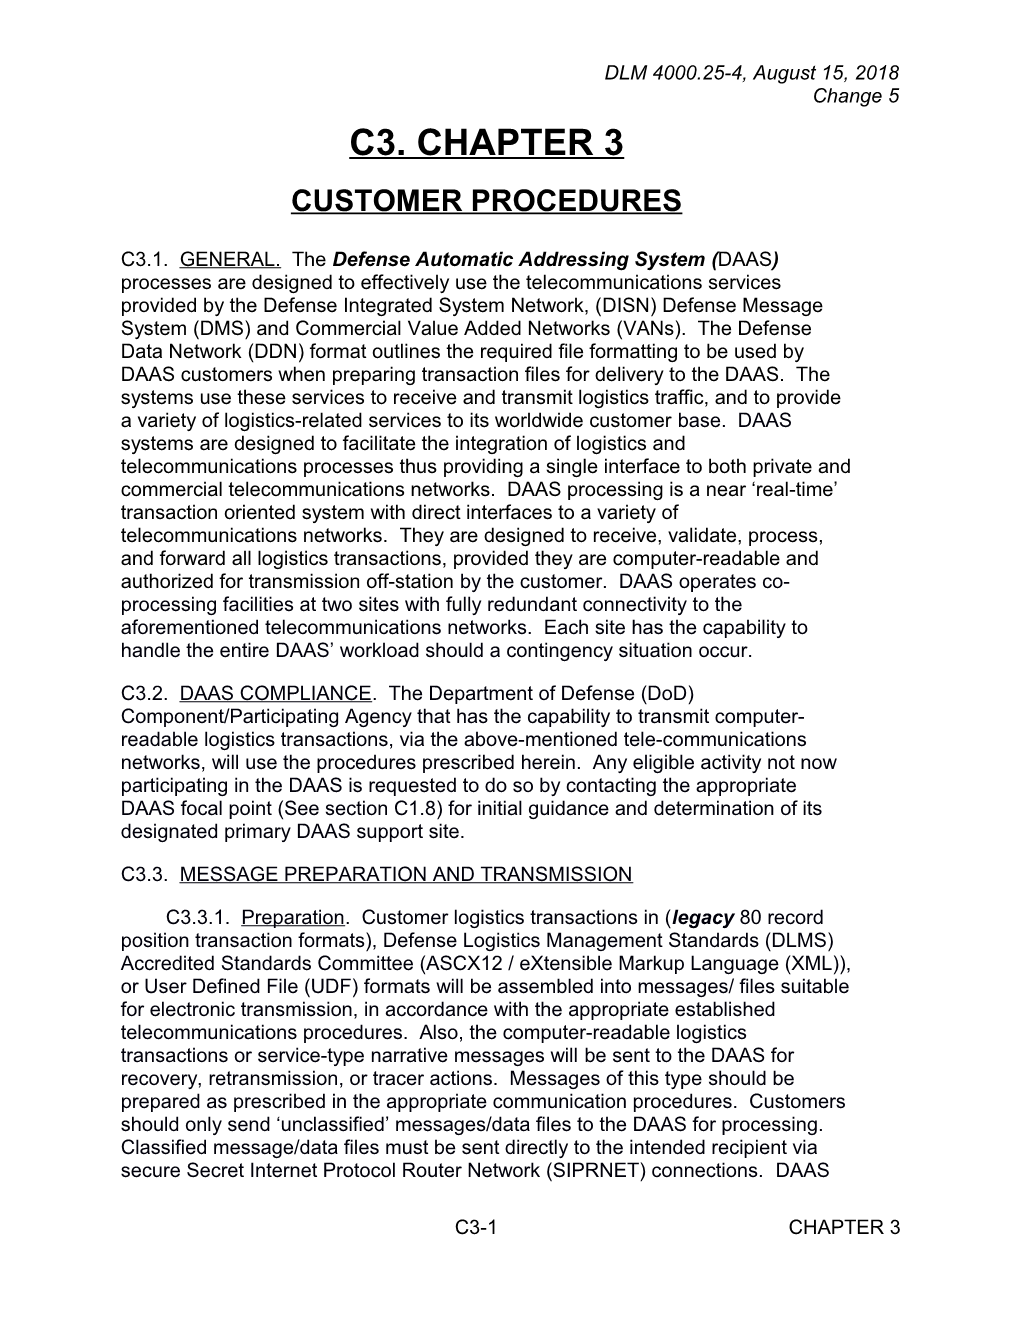 Chapter 3 - Customer Procedures